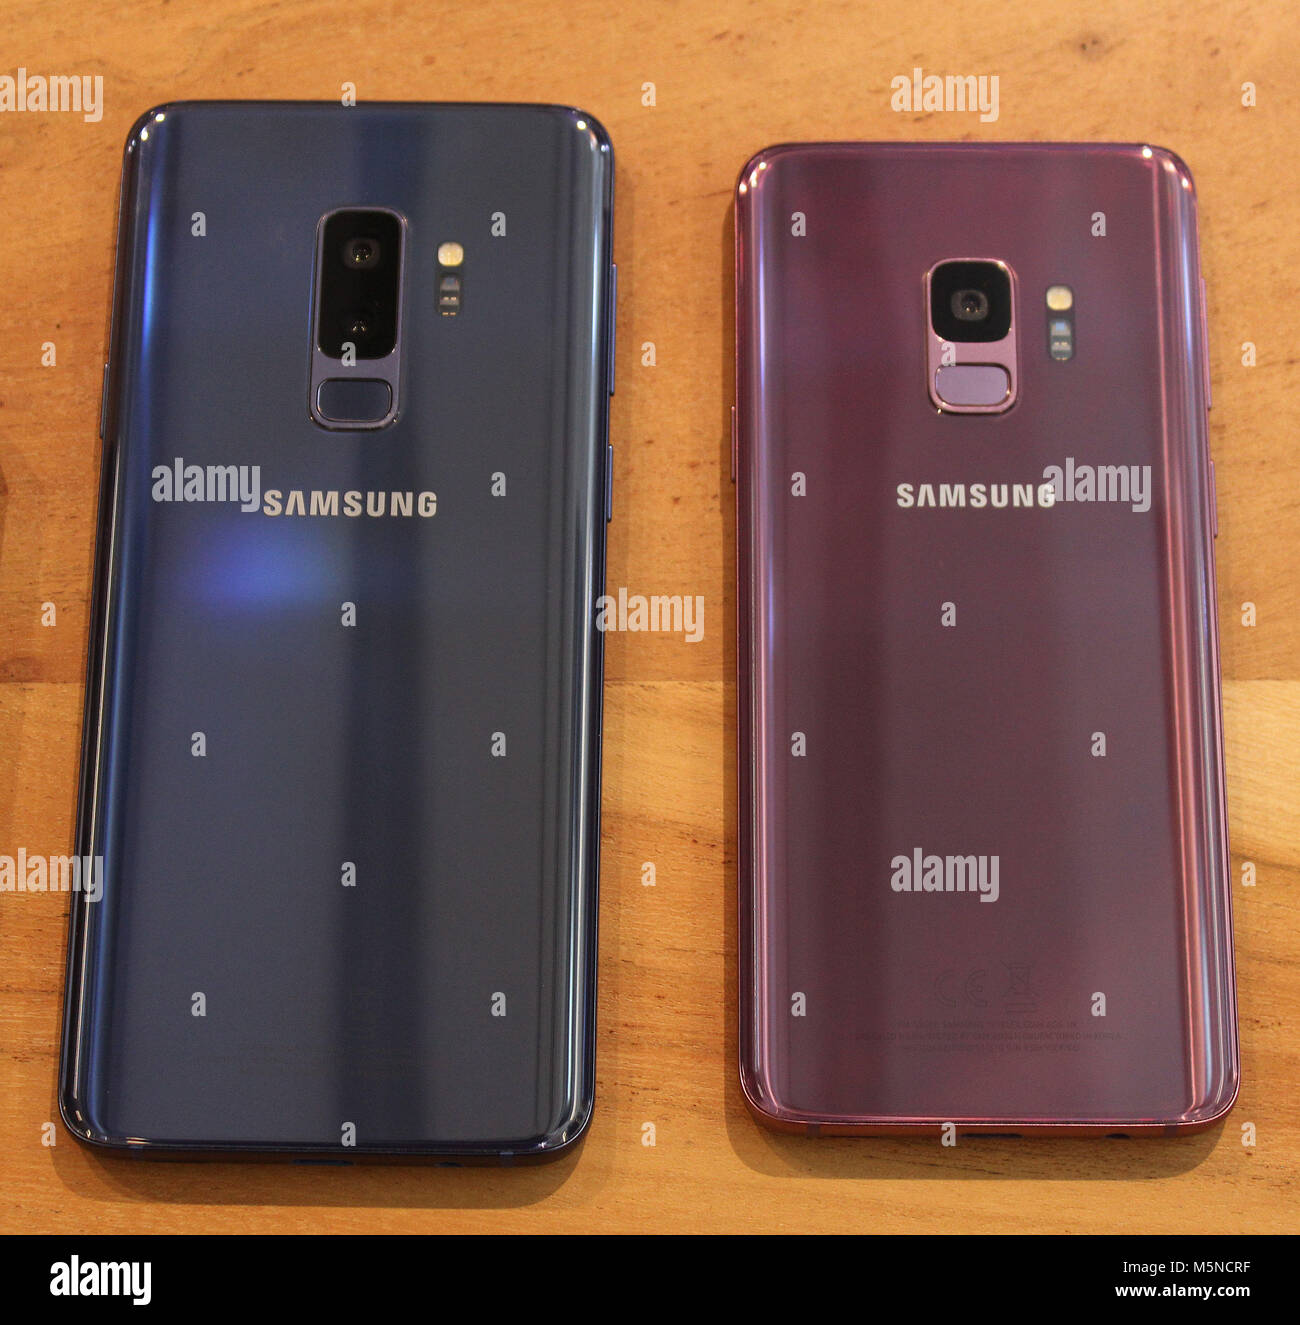 Eine Rückansicht des neuen Samsung Galaxy S9 und S9+ (links) Smartphones, vorgestellt von Samsung auf dem iPhone X, mit hoher Spezifikation Kameras und Gesicht komplett-Scanning Technology personalisierte Emoji zu erstellen. Stockfoto